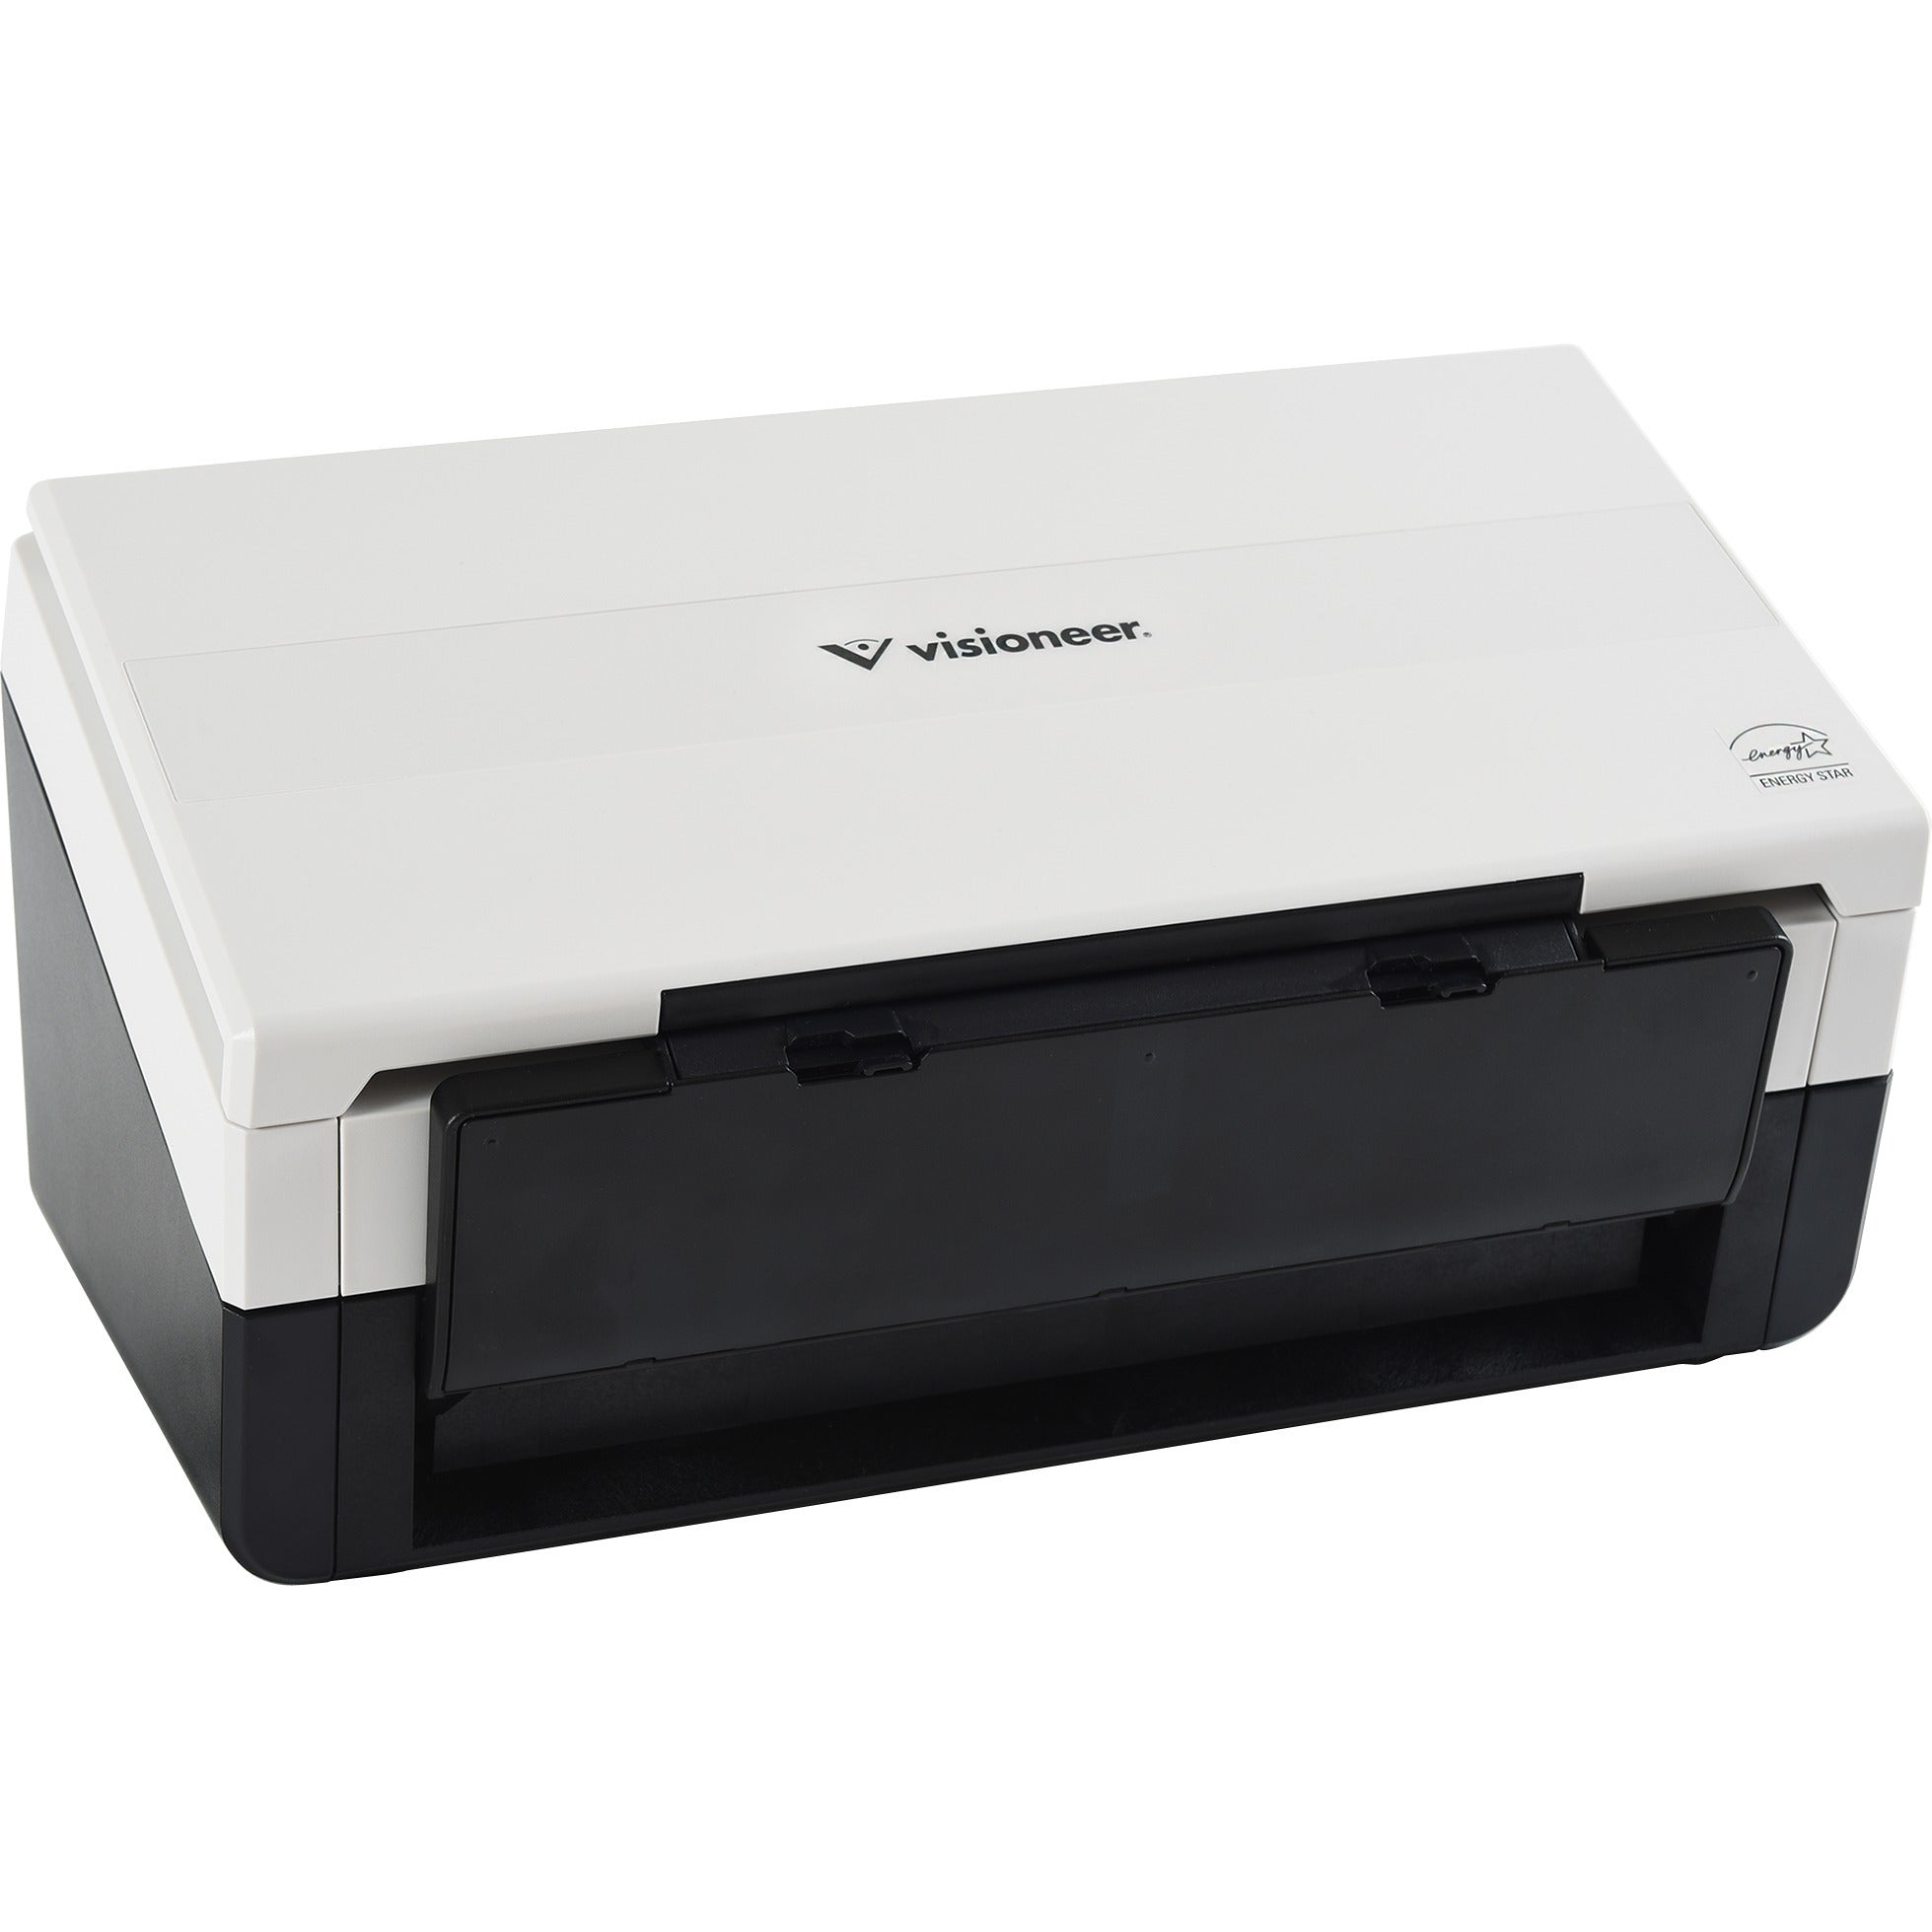 DocketPORT DP468 - sheetfed scanner - portable - USB 2.0 - DP468